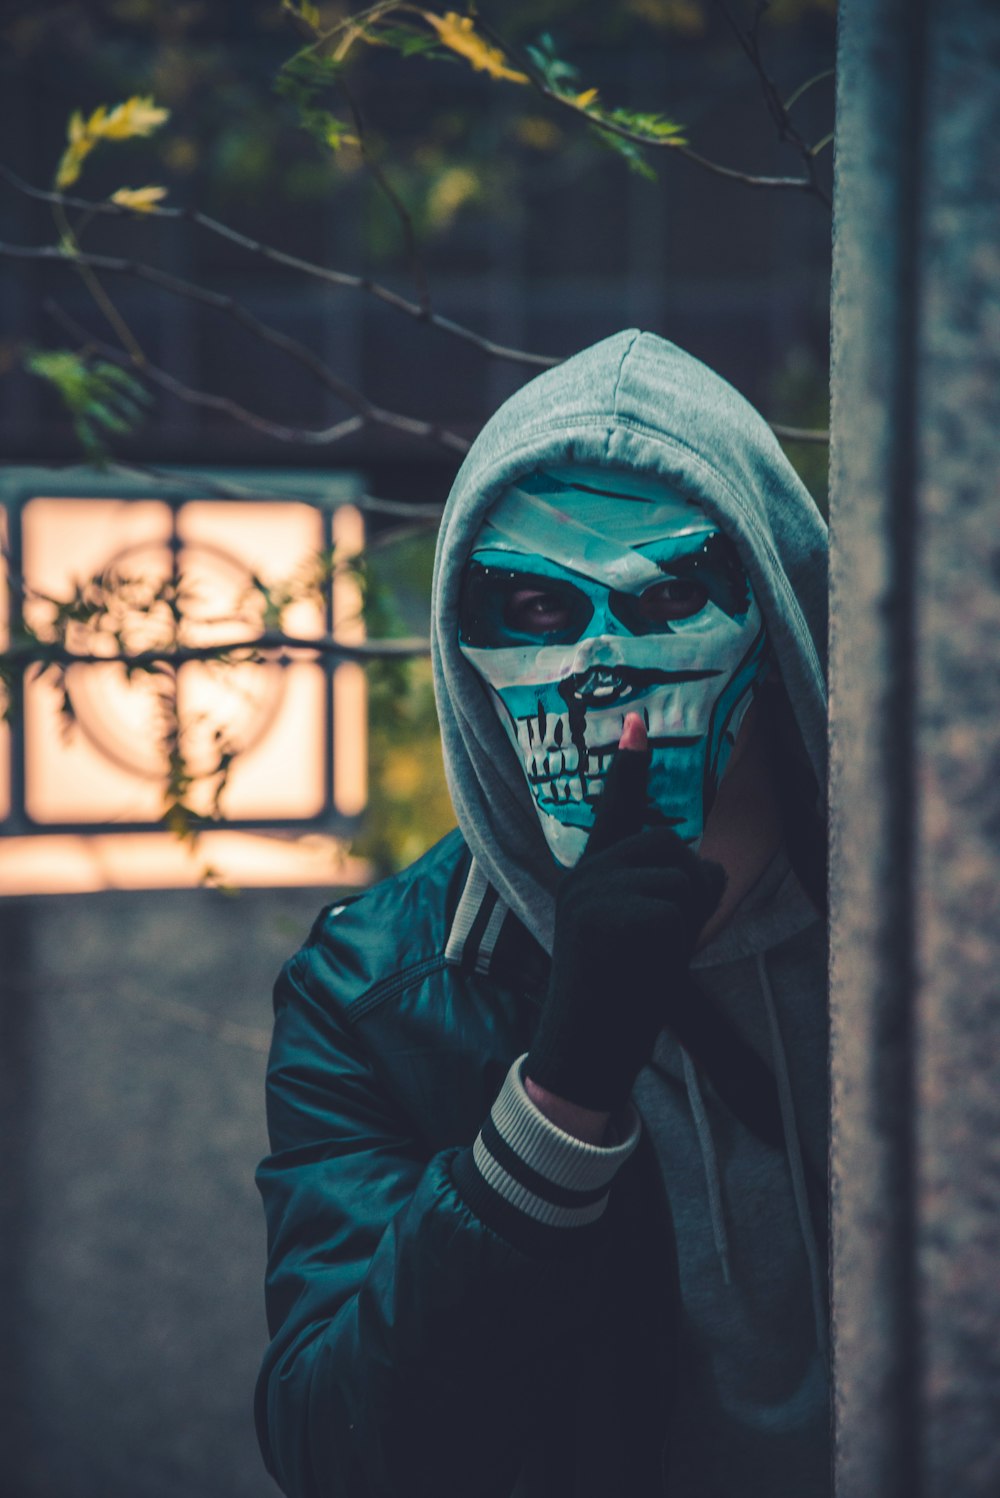 철조망 근처에서 마스크를 착용한 사람의 사진